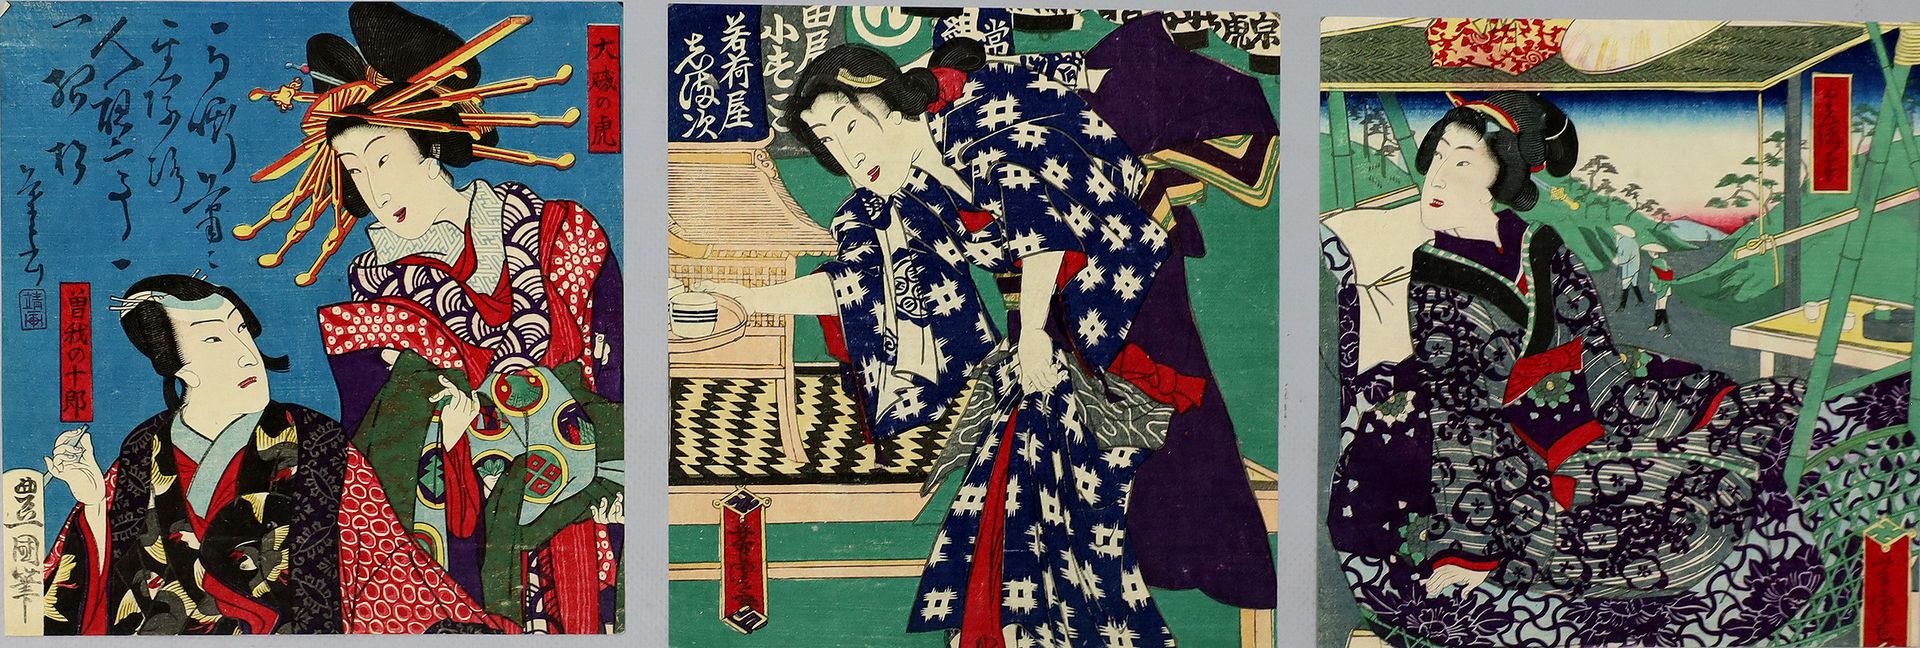 Kunisada (1786 - 1865), Yoshitora (1850 - 1880)